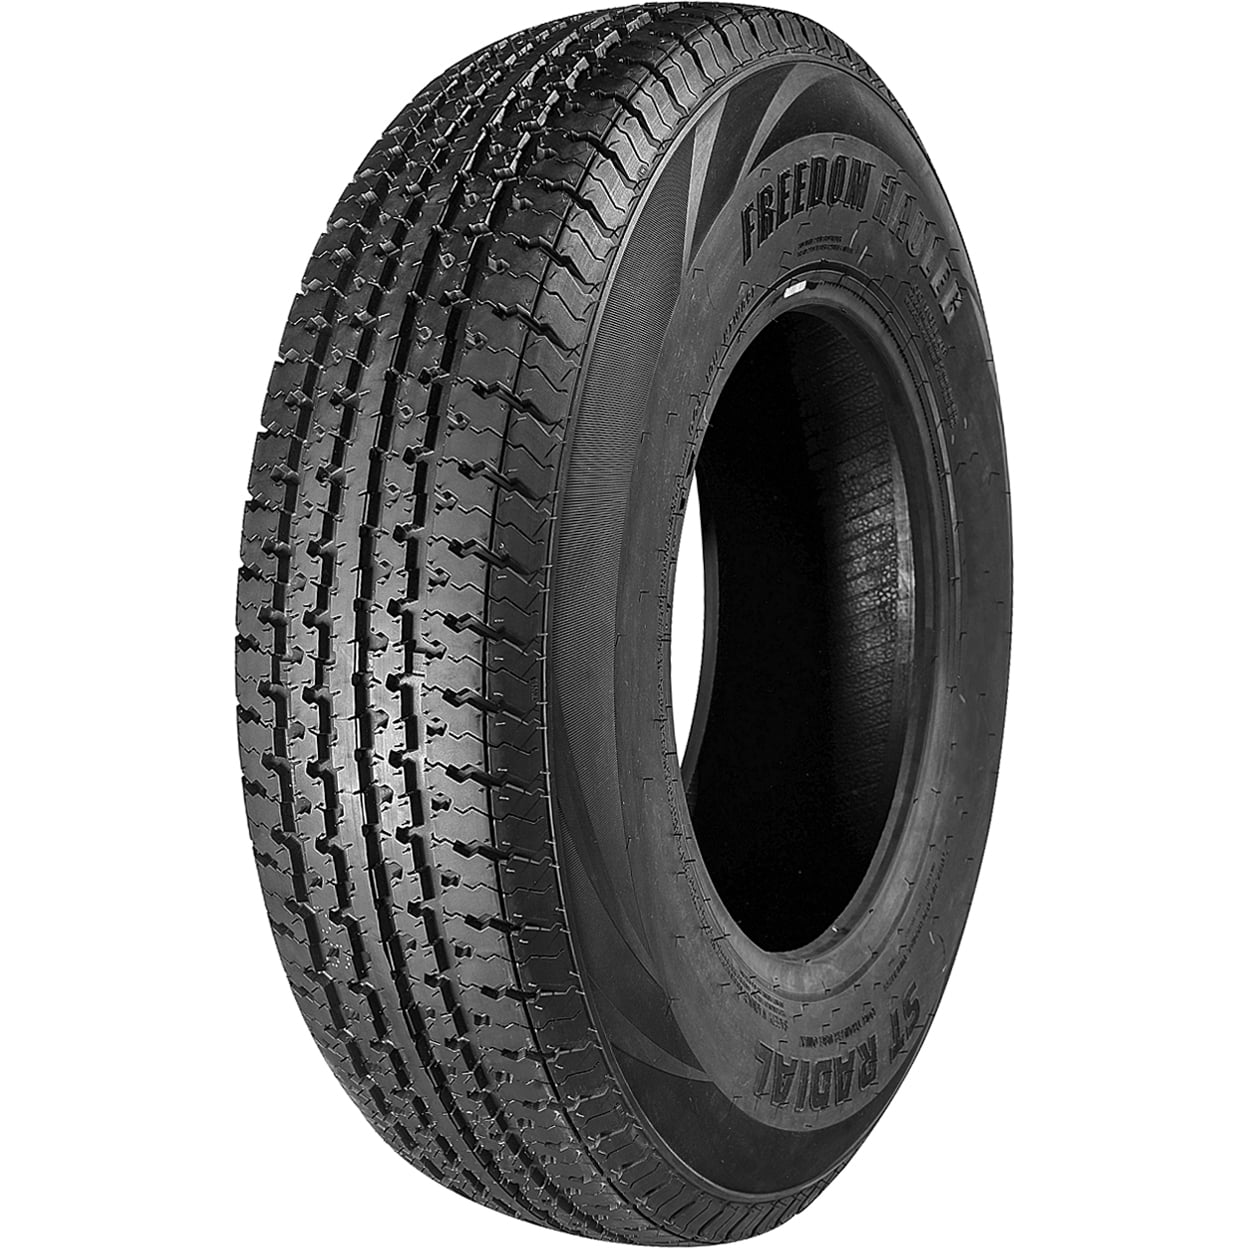 4 Load Range E Set of 4 225/75R15 Trailer Tires Premium DOT ST225/75R15 22575R15 10PR Radial Tires 